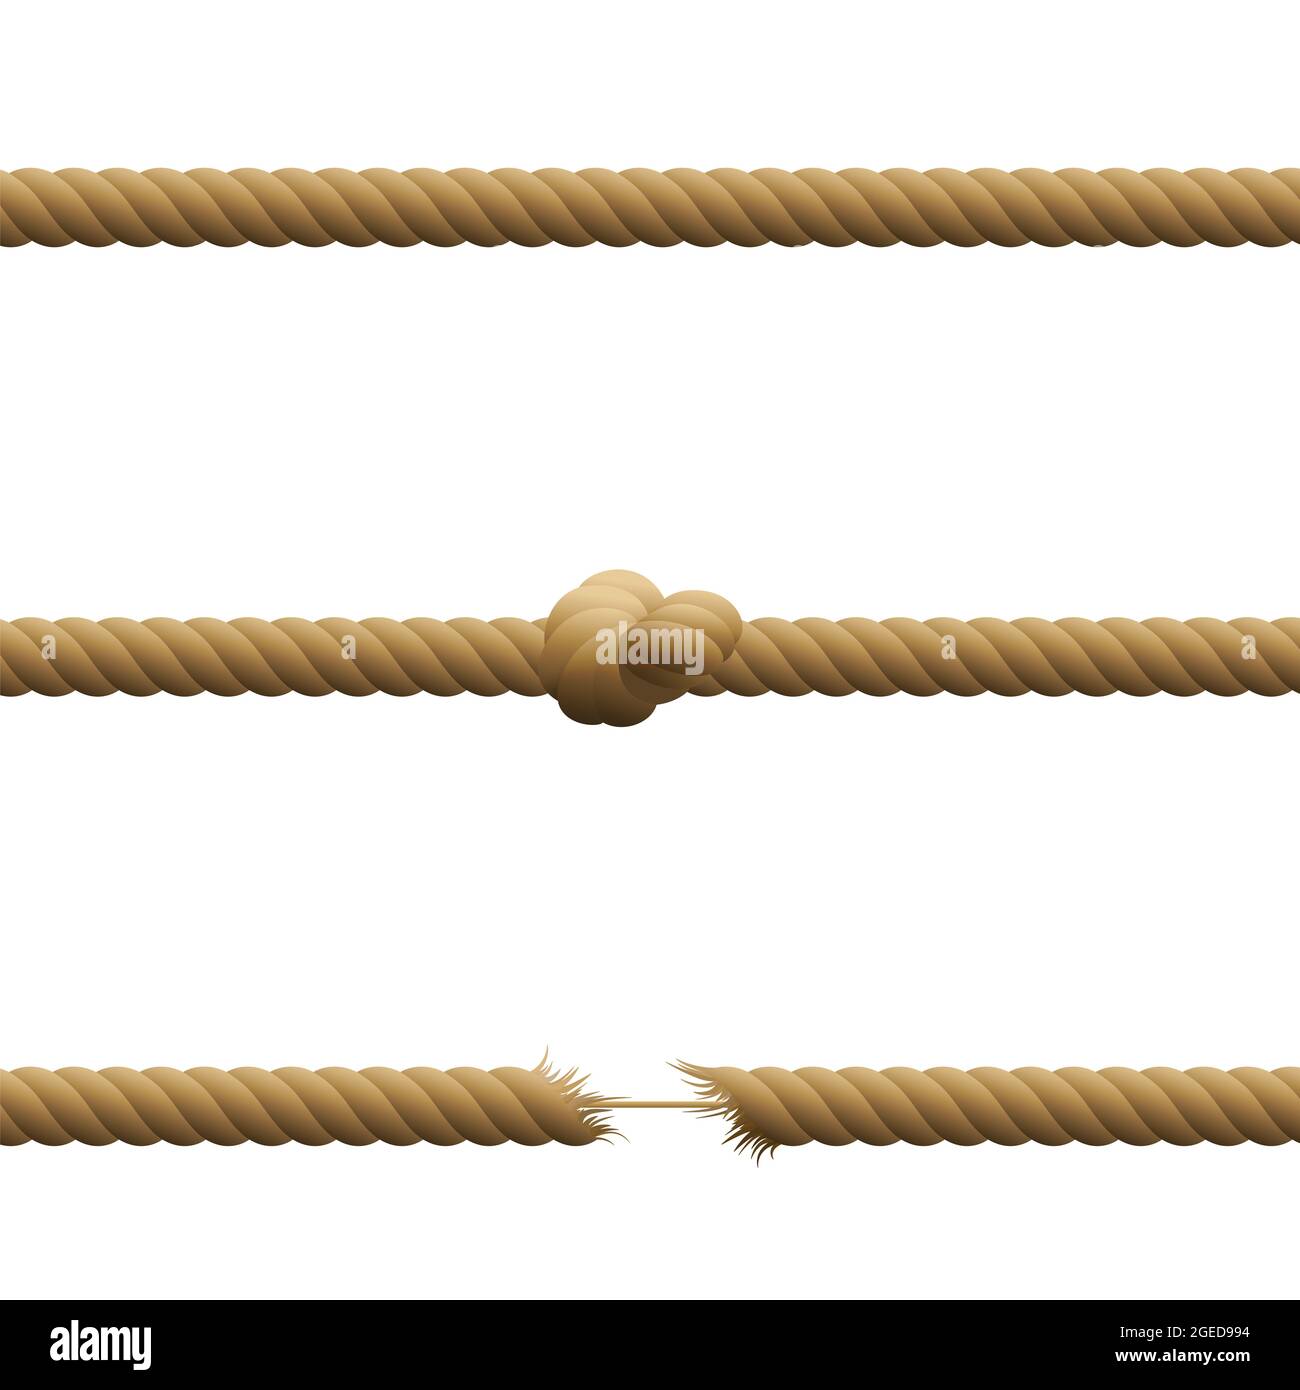 Cordes - intactes, avec nœud et suspendues par un fil avec des extrémités tendues effilochées maintenues ensemble par une corde fine - illustration sur fond blanc. Banque D'Images